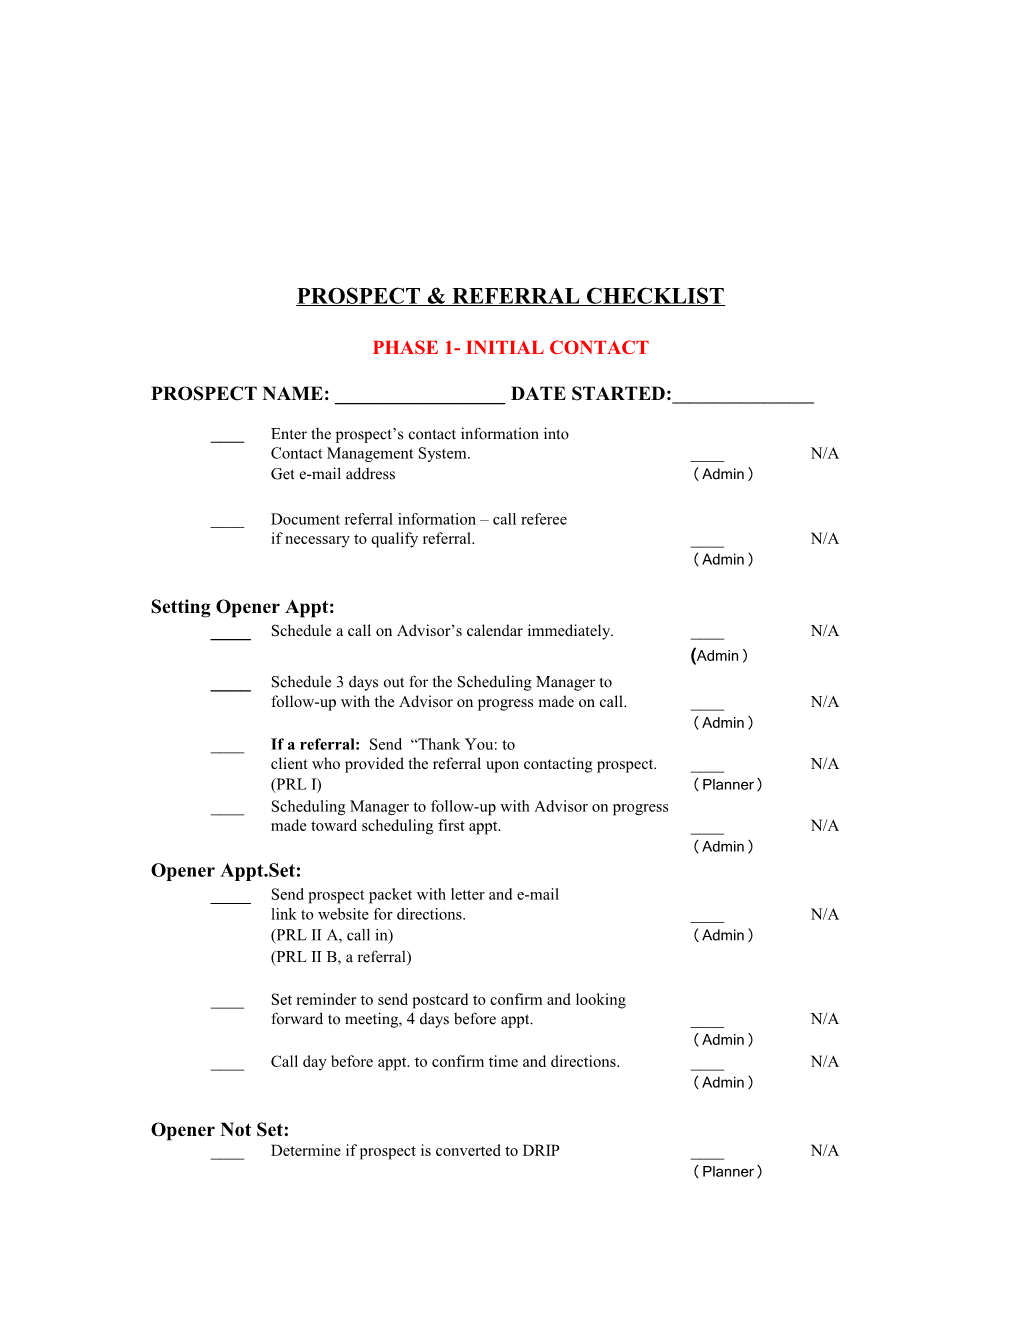 Prospect & Referral Checklist